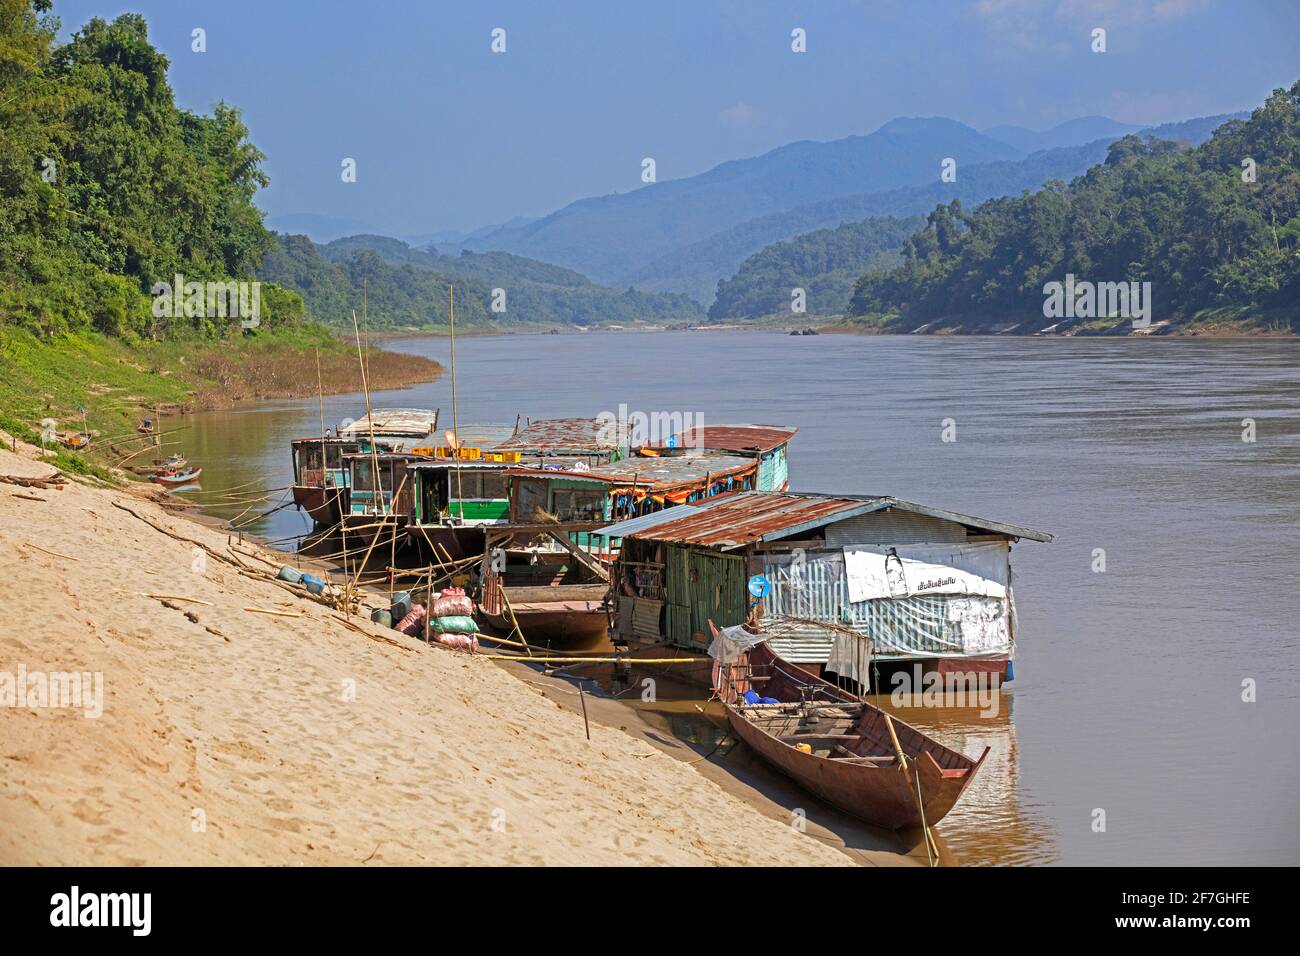 Slowboats / slow boats for river cruises to Luang Phabang / Luang Prabang / Louangphabang on the Mekong River at sunset, Laos Stock Photo